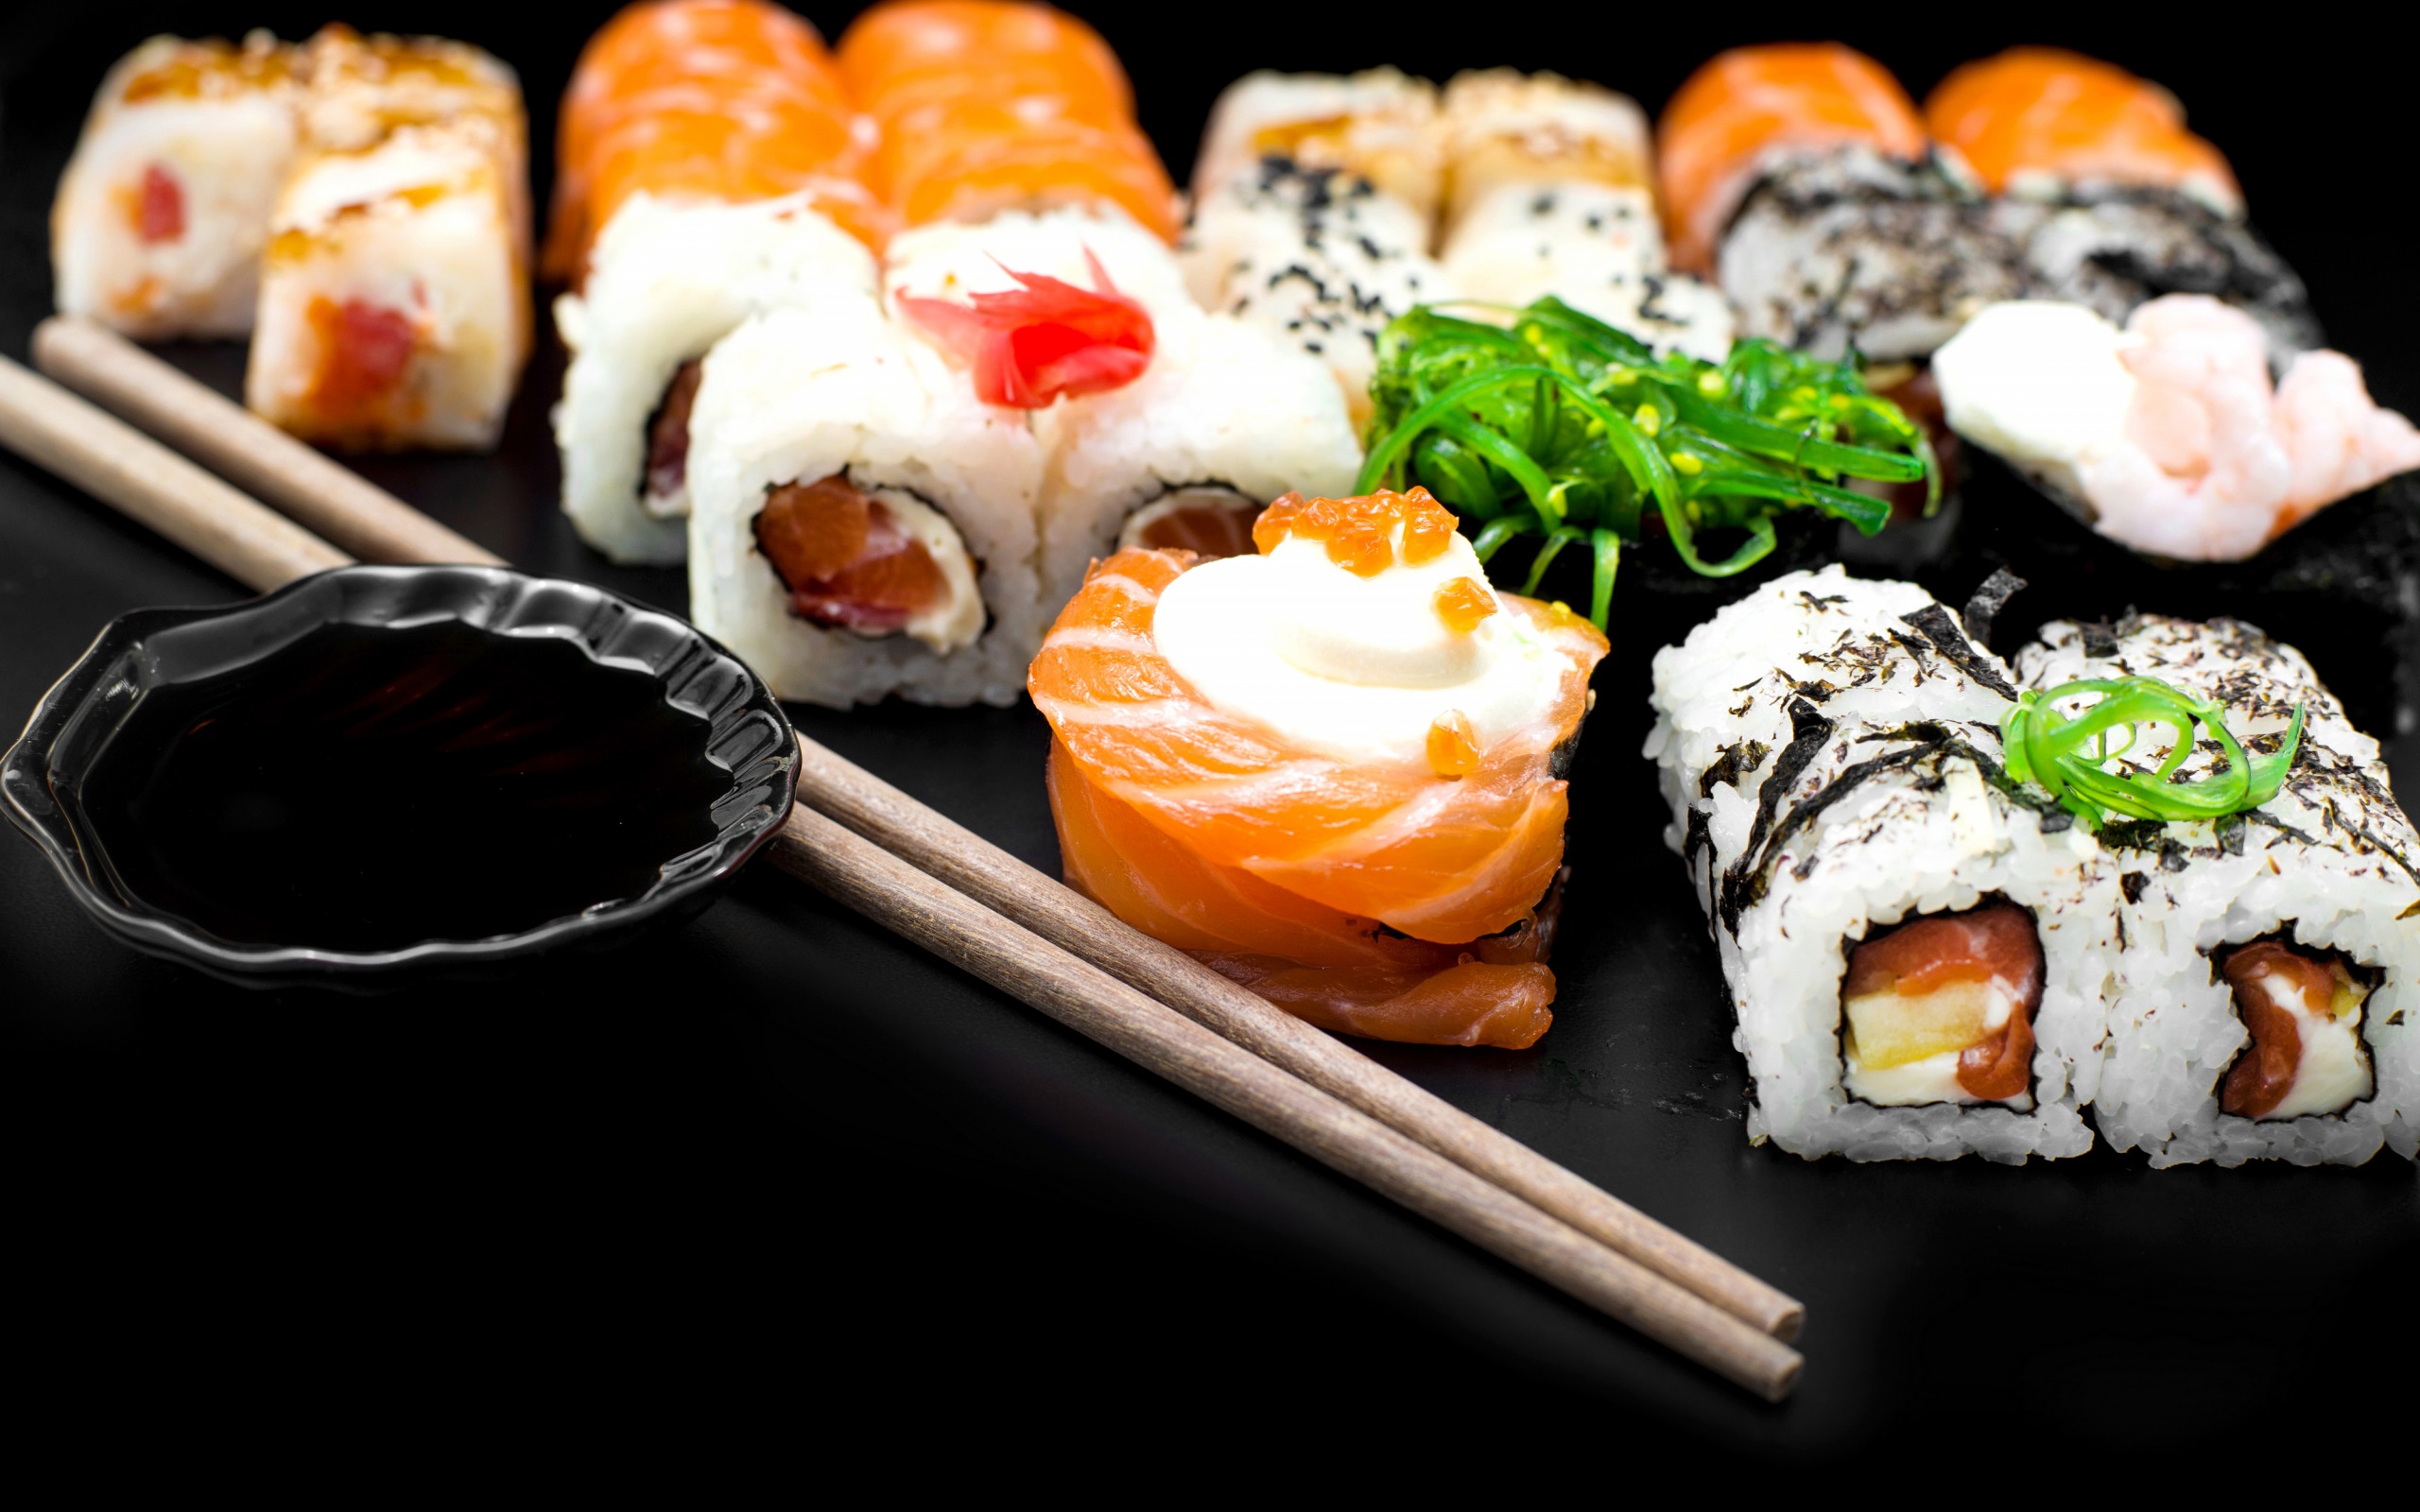 роллы, суши, палочки для еды, деликатесные блюда, китайская кухня, Rolls, sushi, chopsticks, delicacies, Chinese cuisine